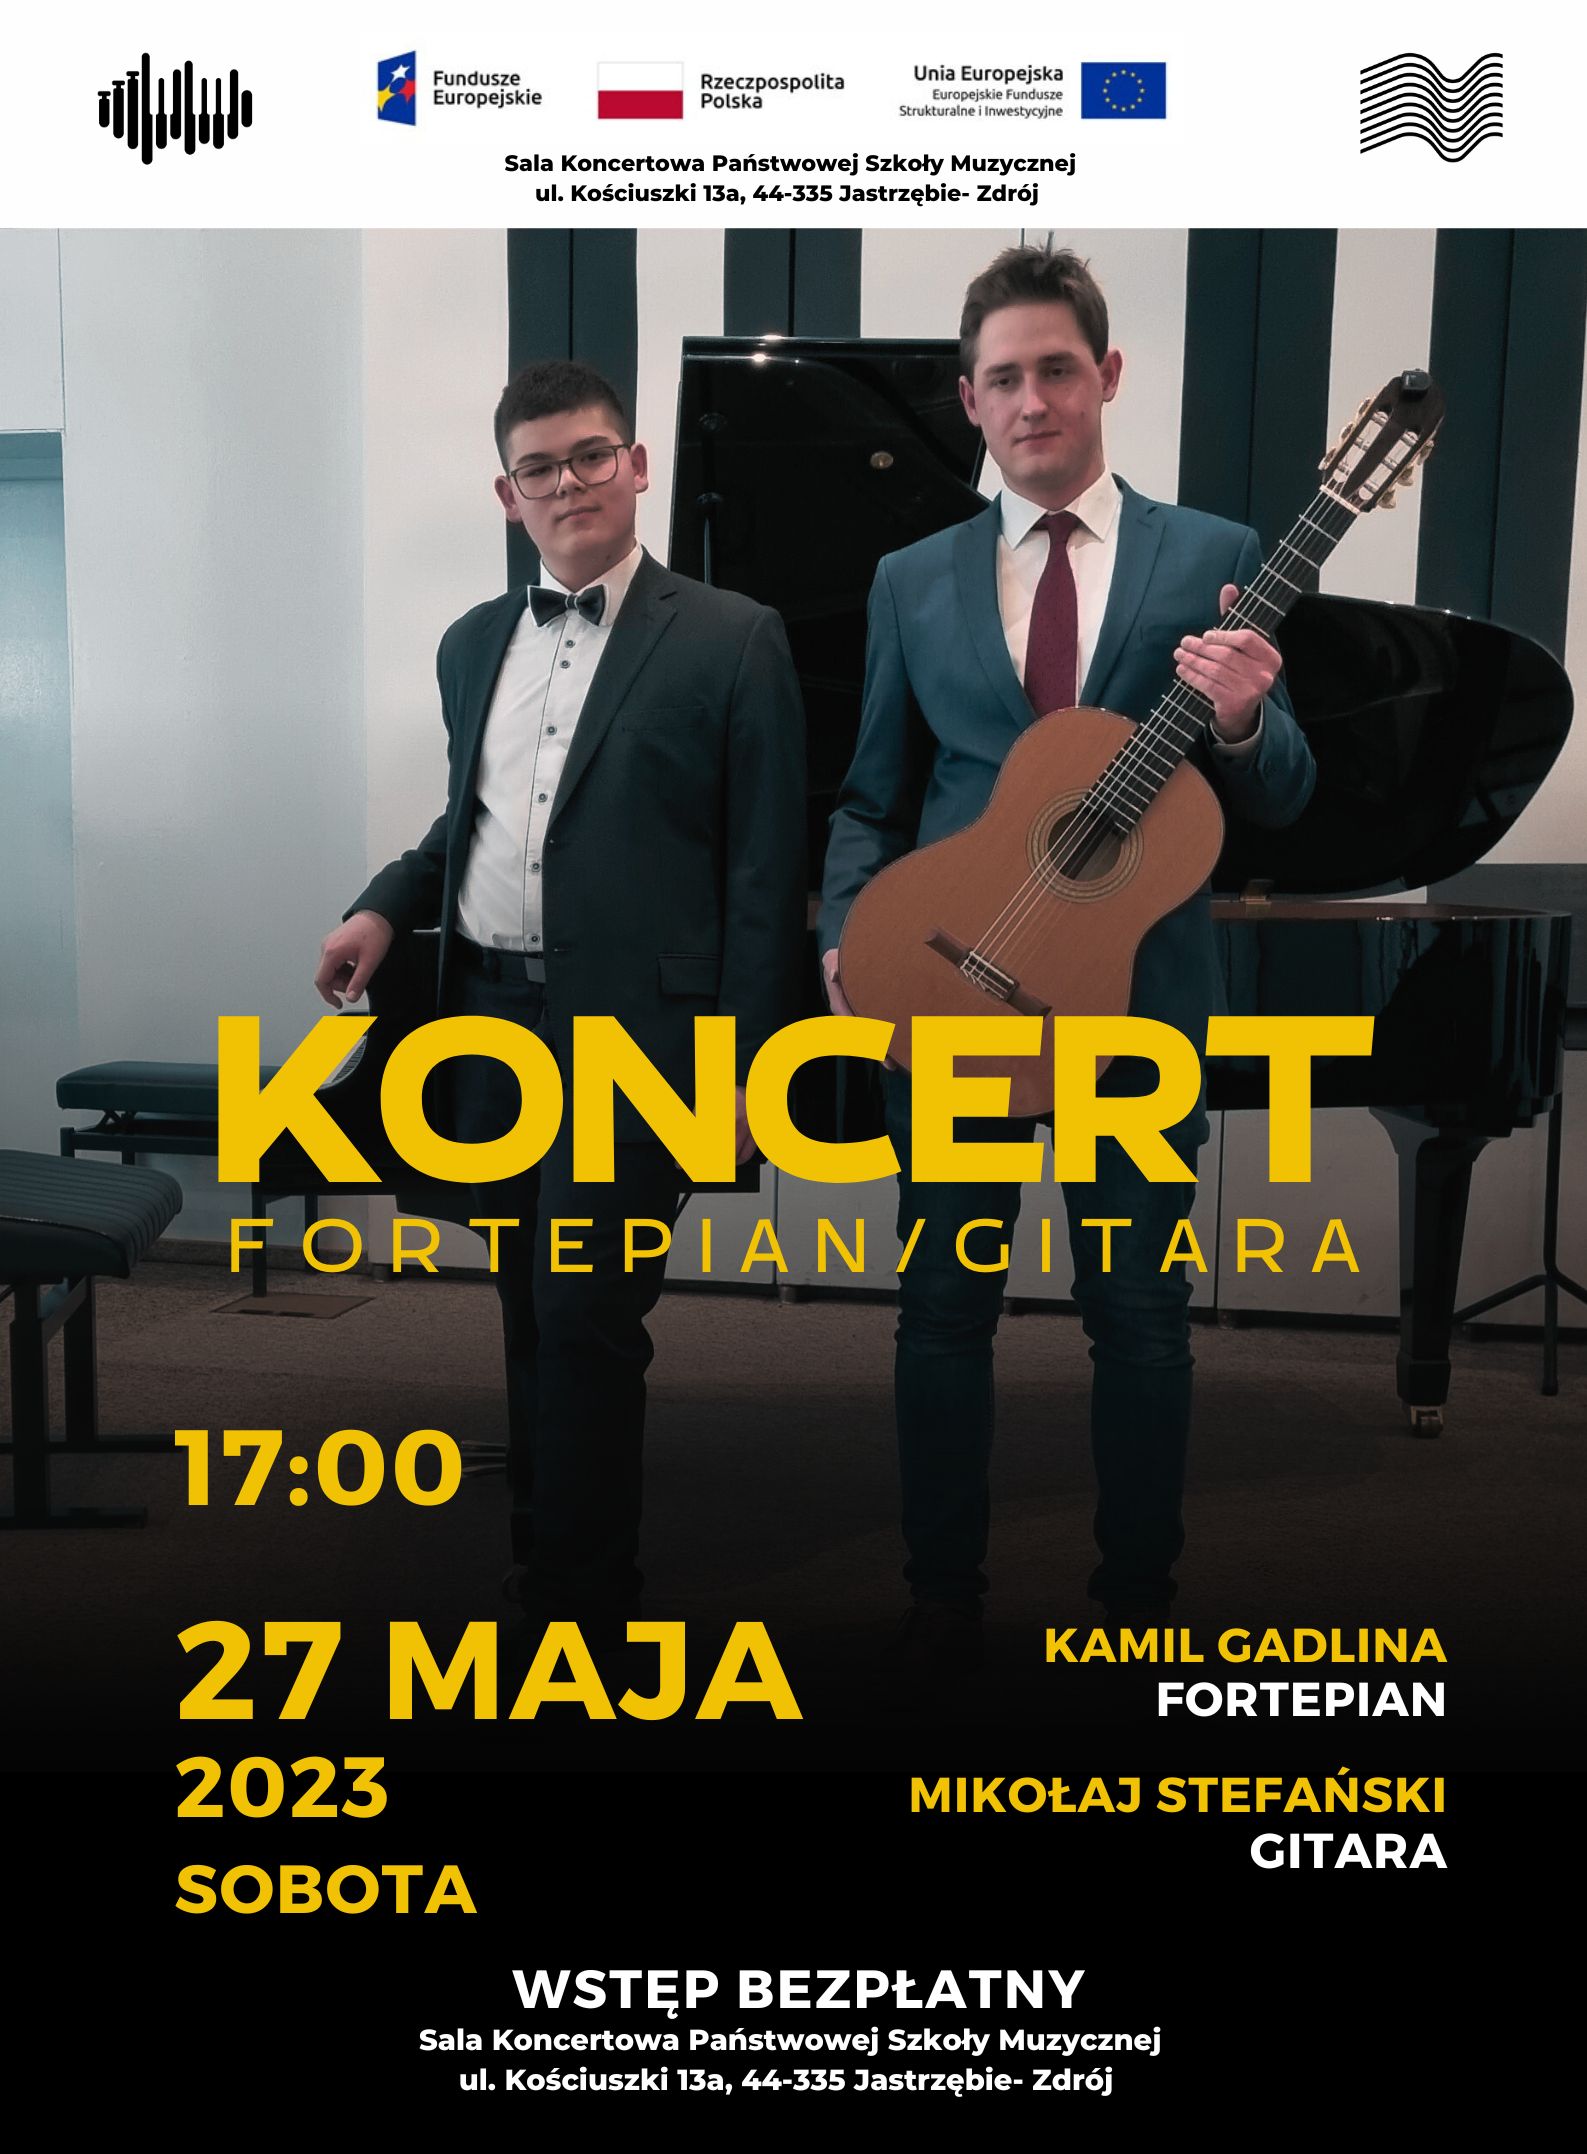 Plakat na koncert uczniów Kamila Gadliny i Mikołaja Stefańskiego